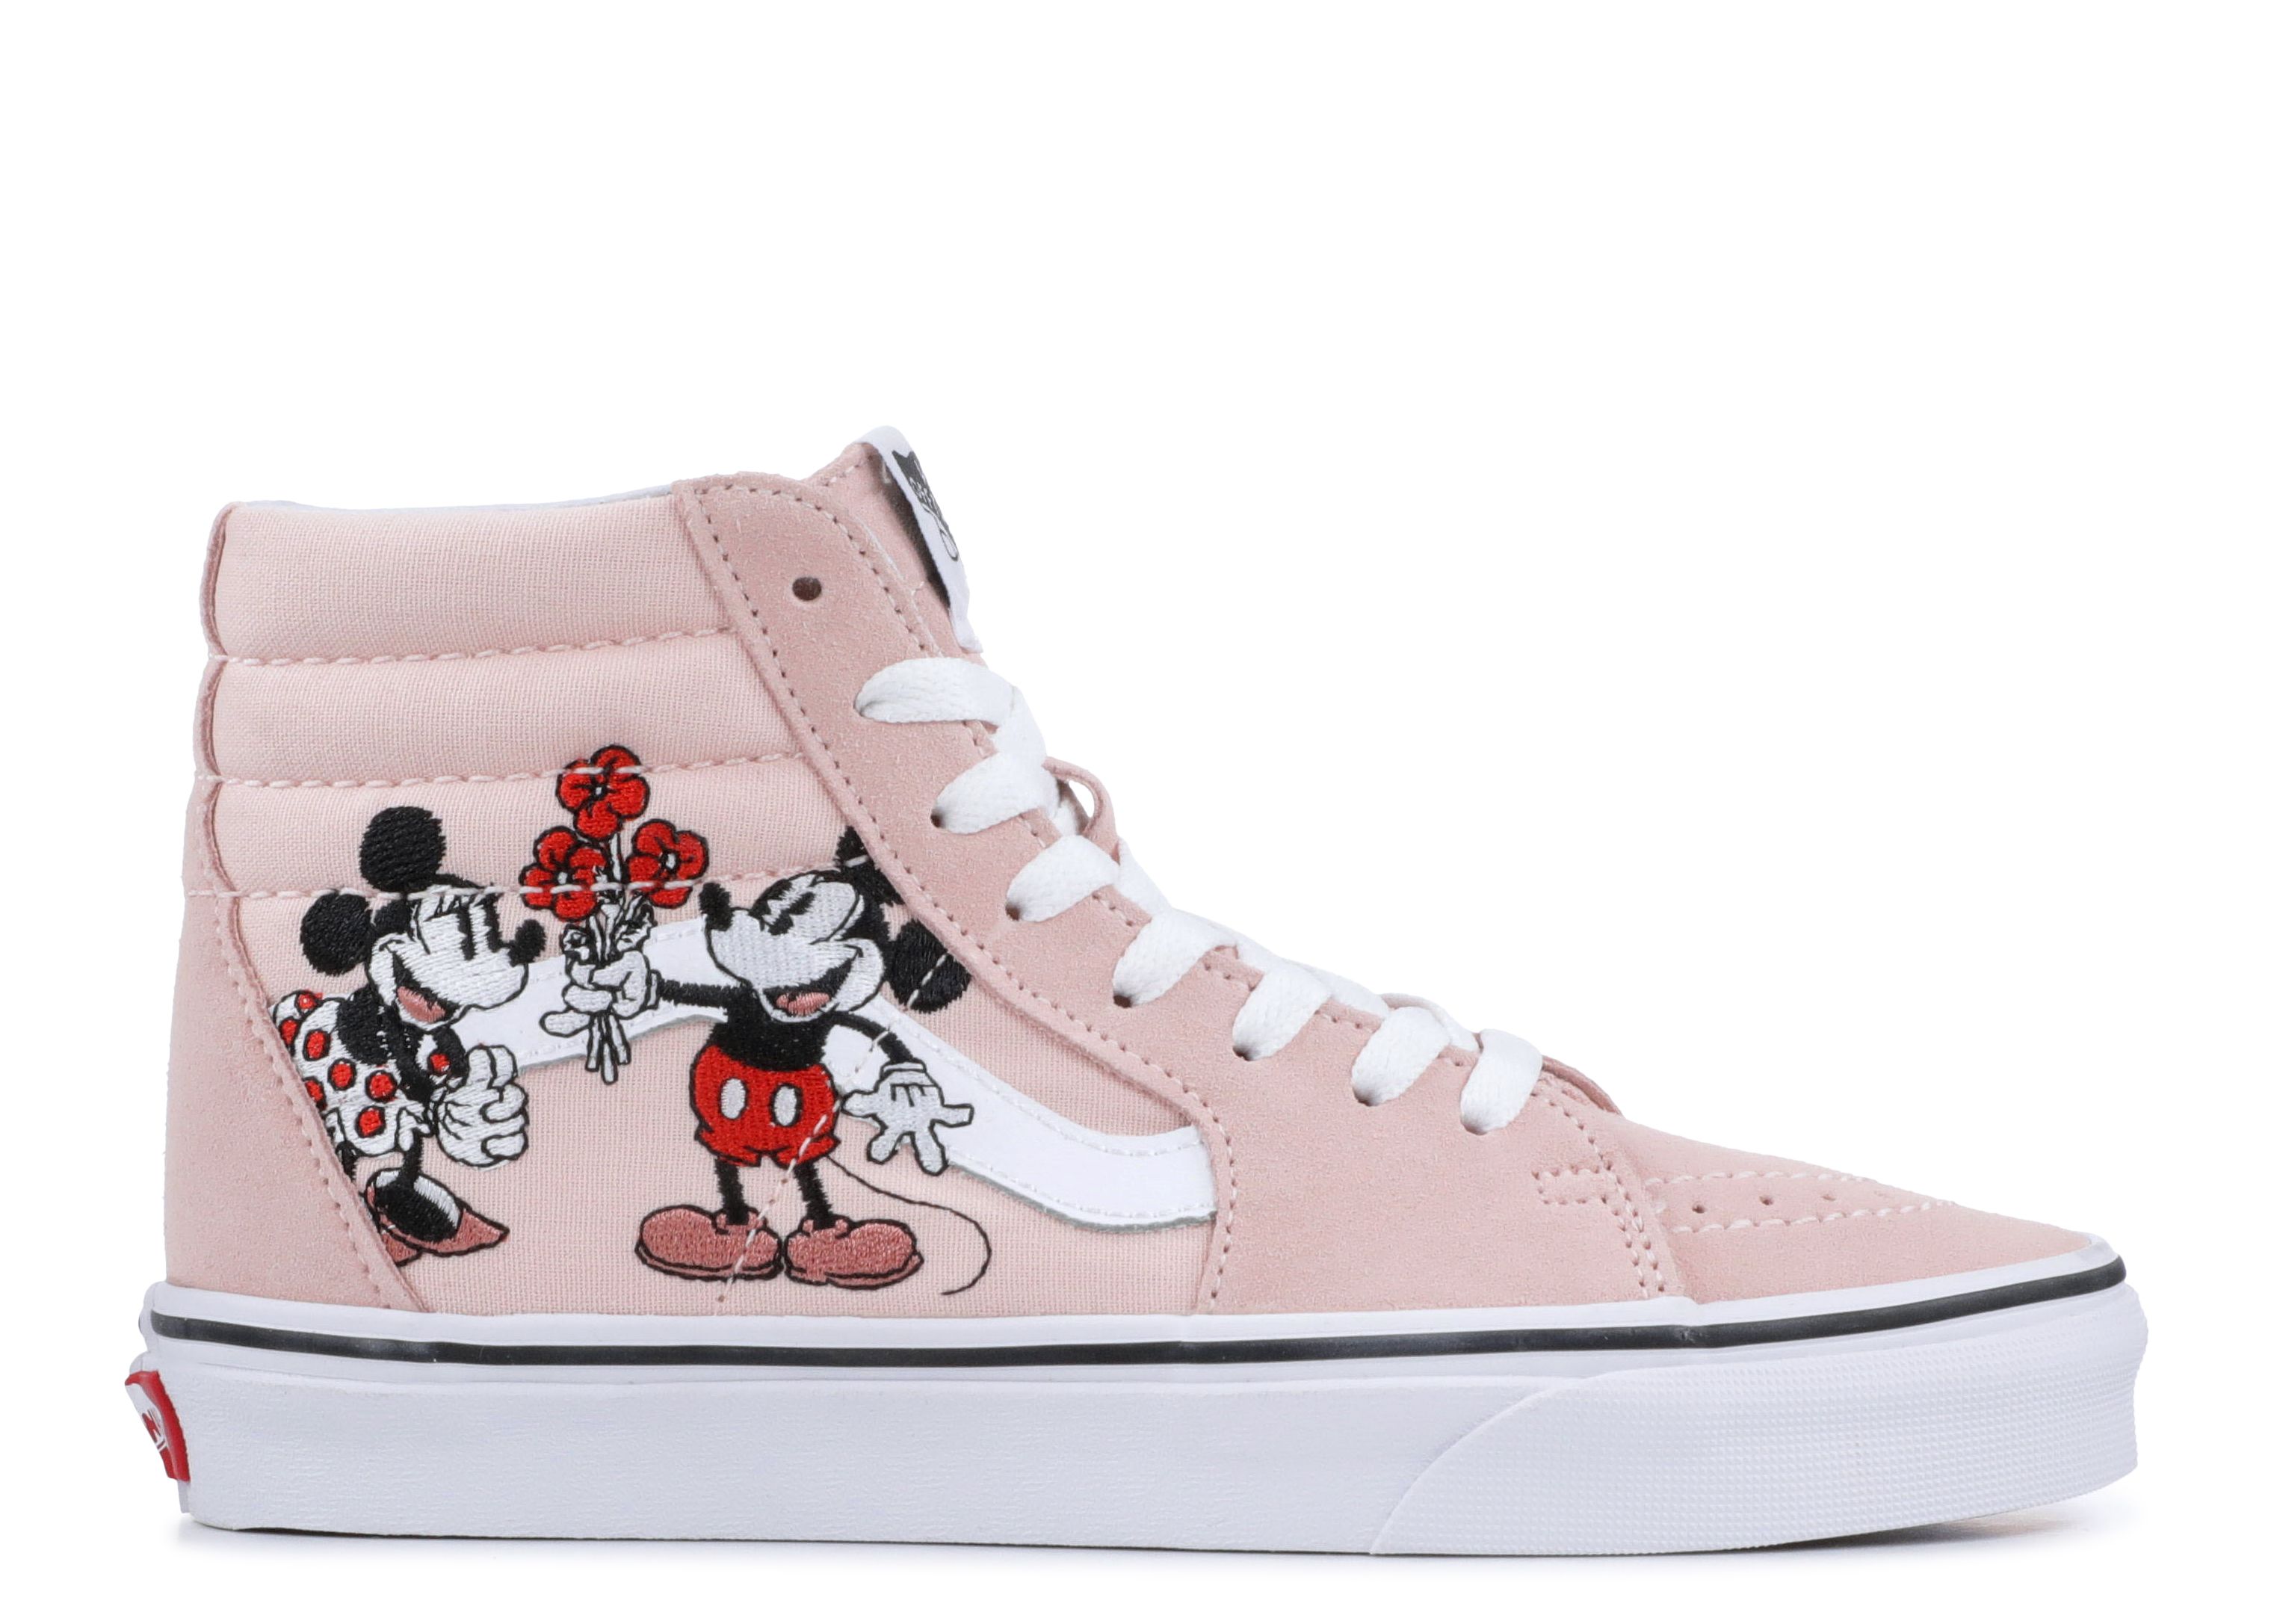 Кроссовки Vans Disney X Sk8-Hi 'Mickey & Minnie', розовый аксессуары для обуви с пряжкой из мультфильма микки и минни маус